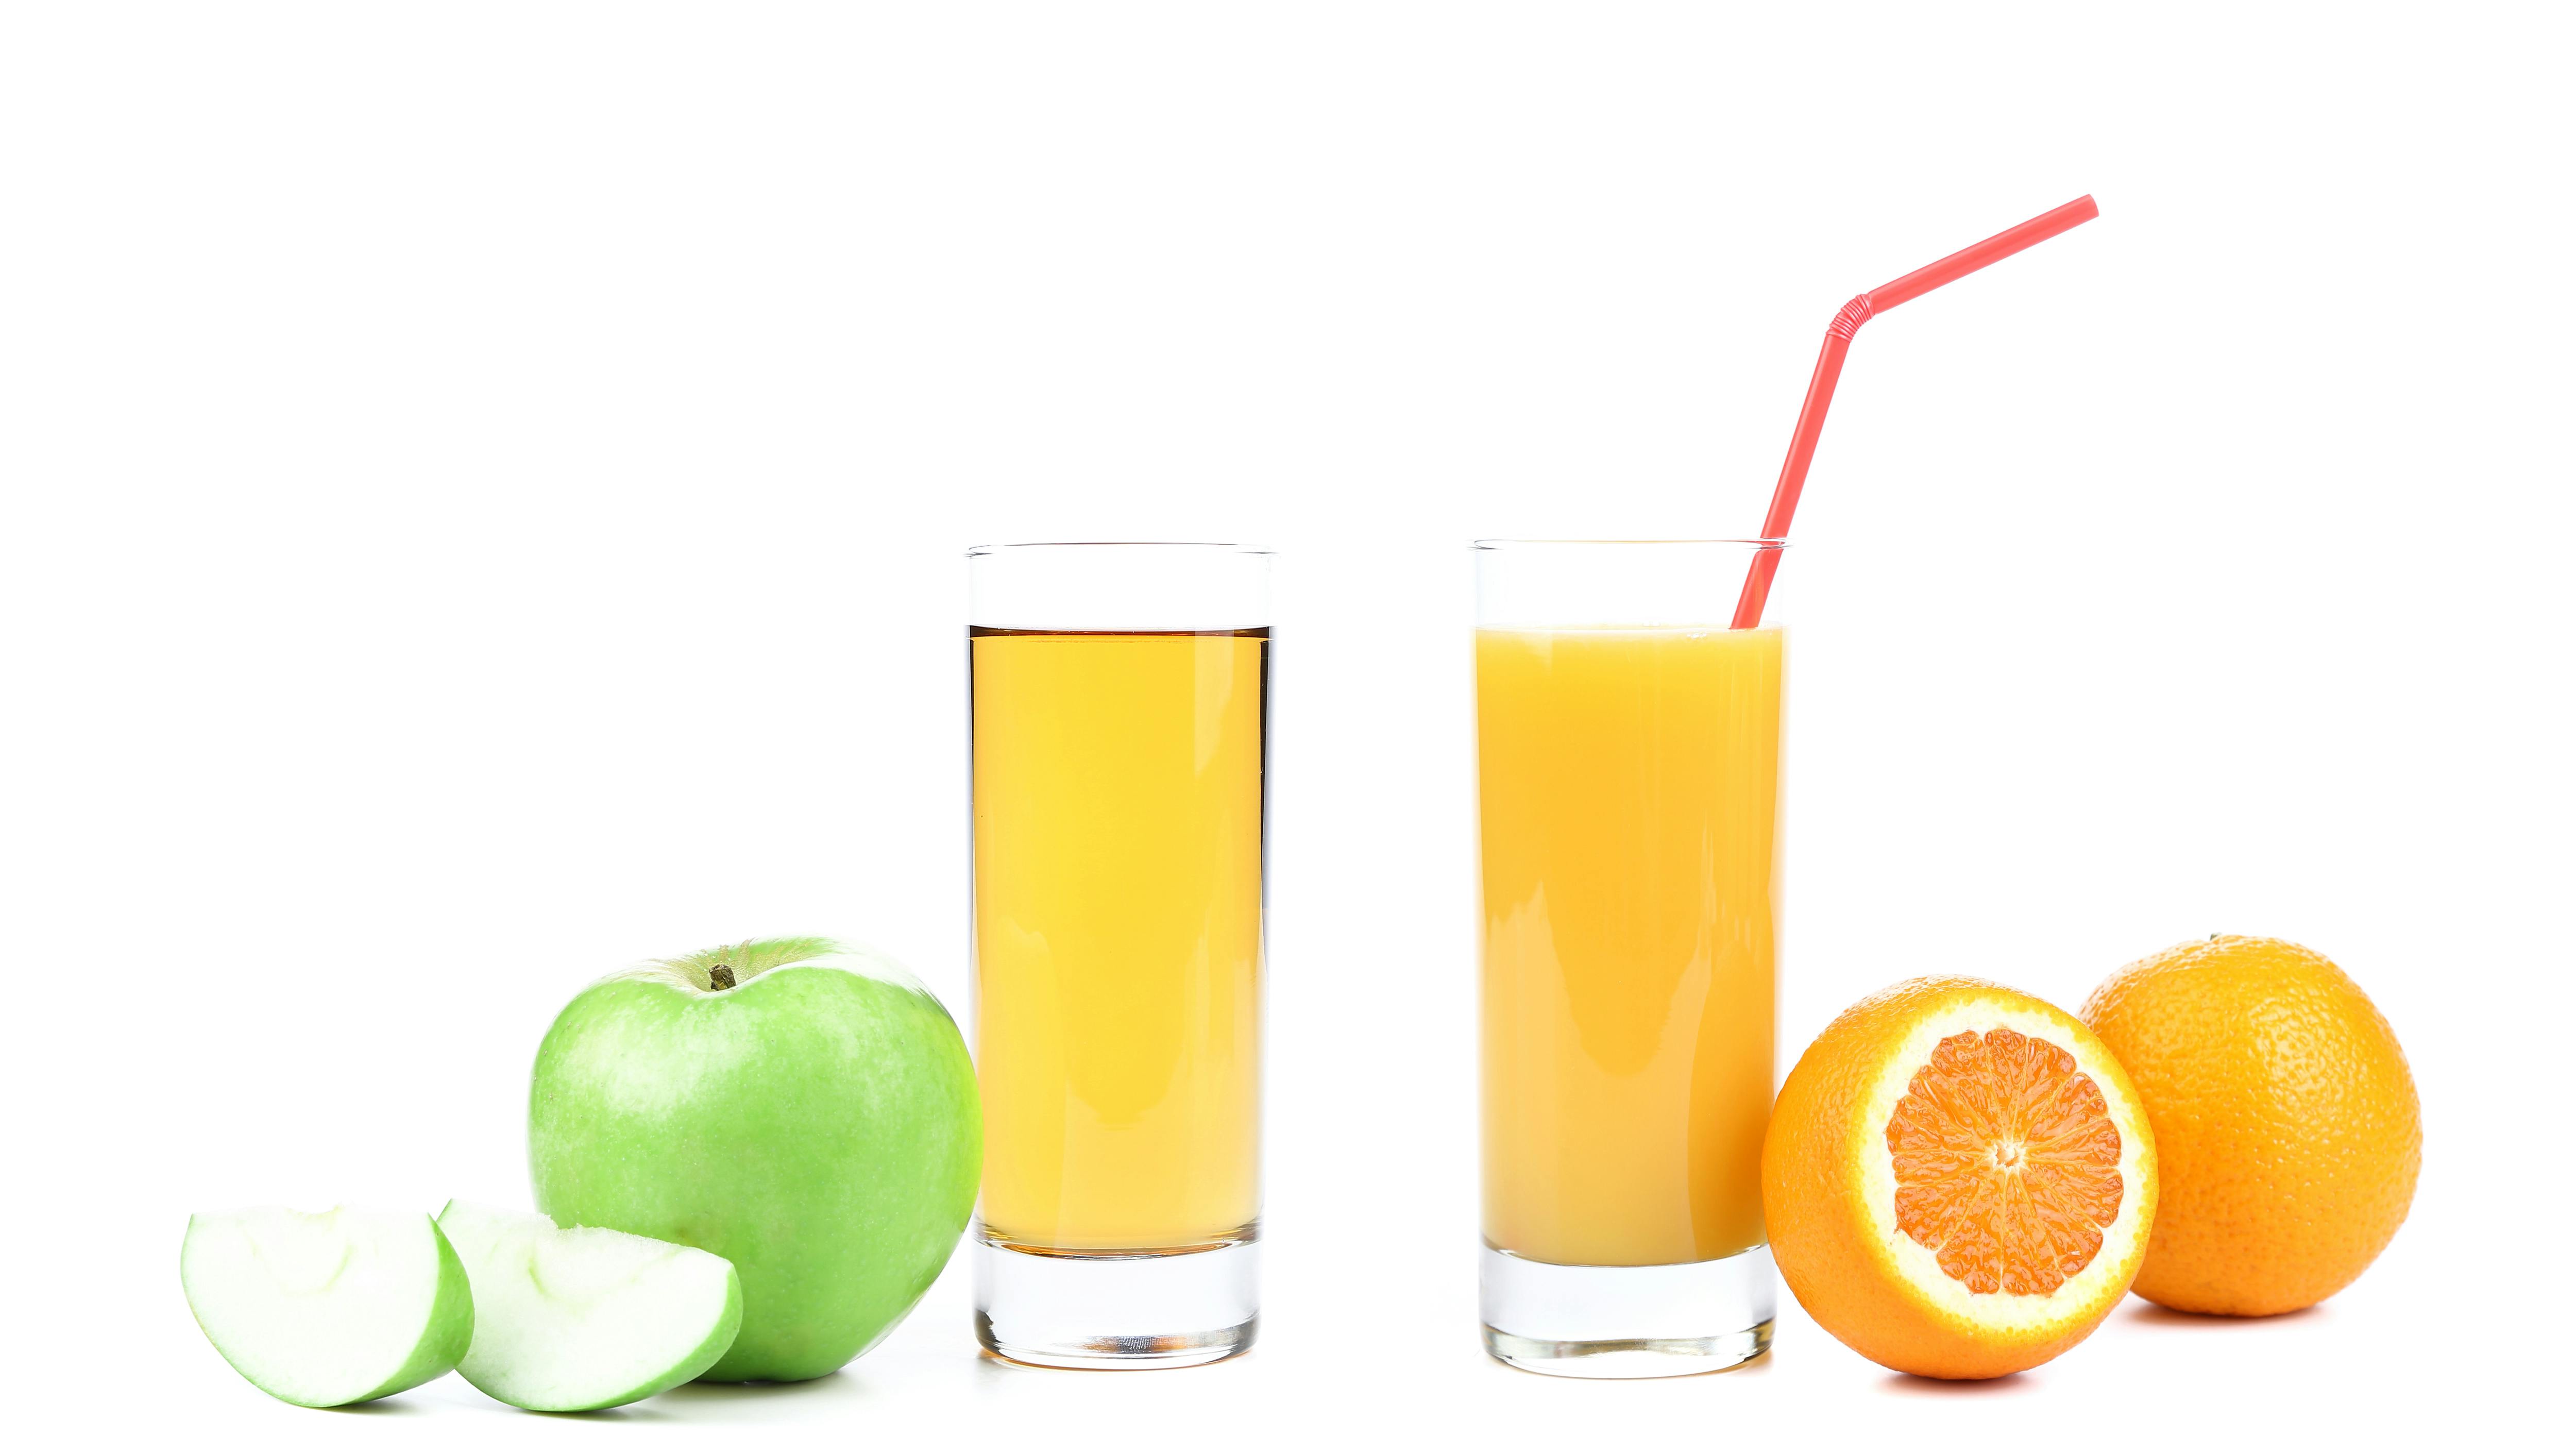 Æble og appelsinjuice i glas